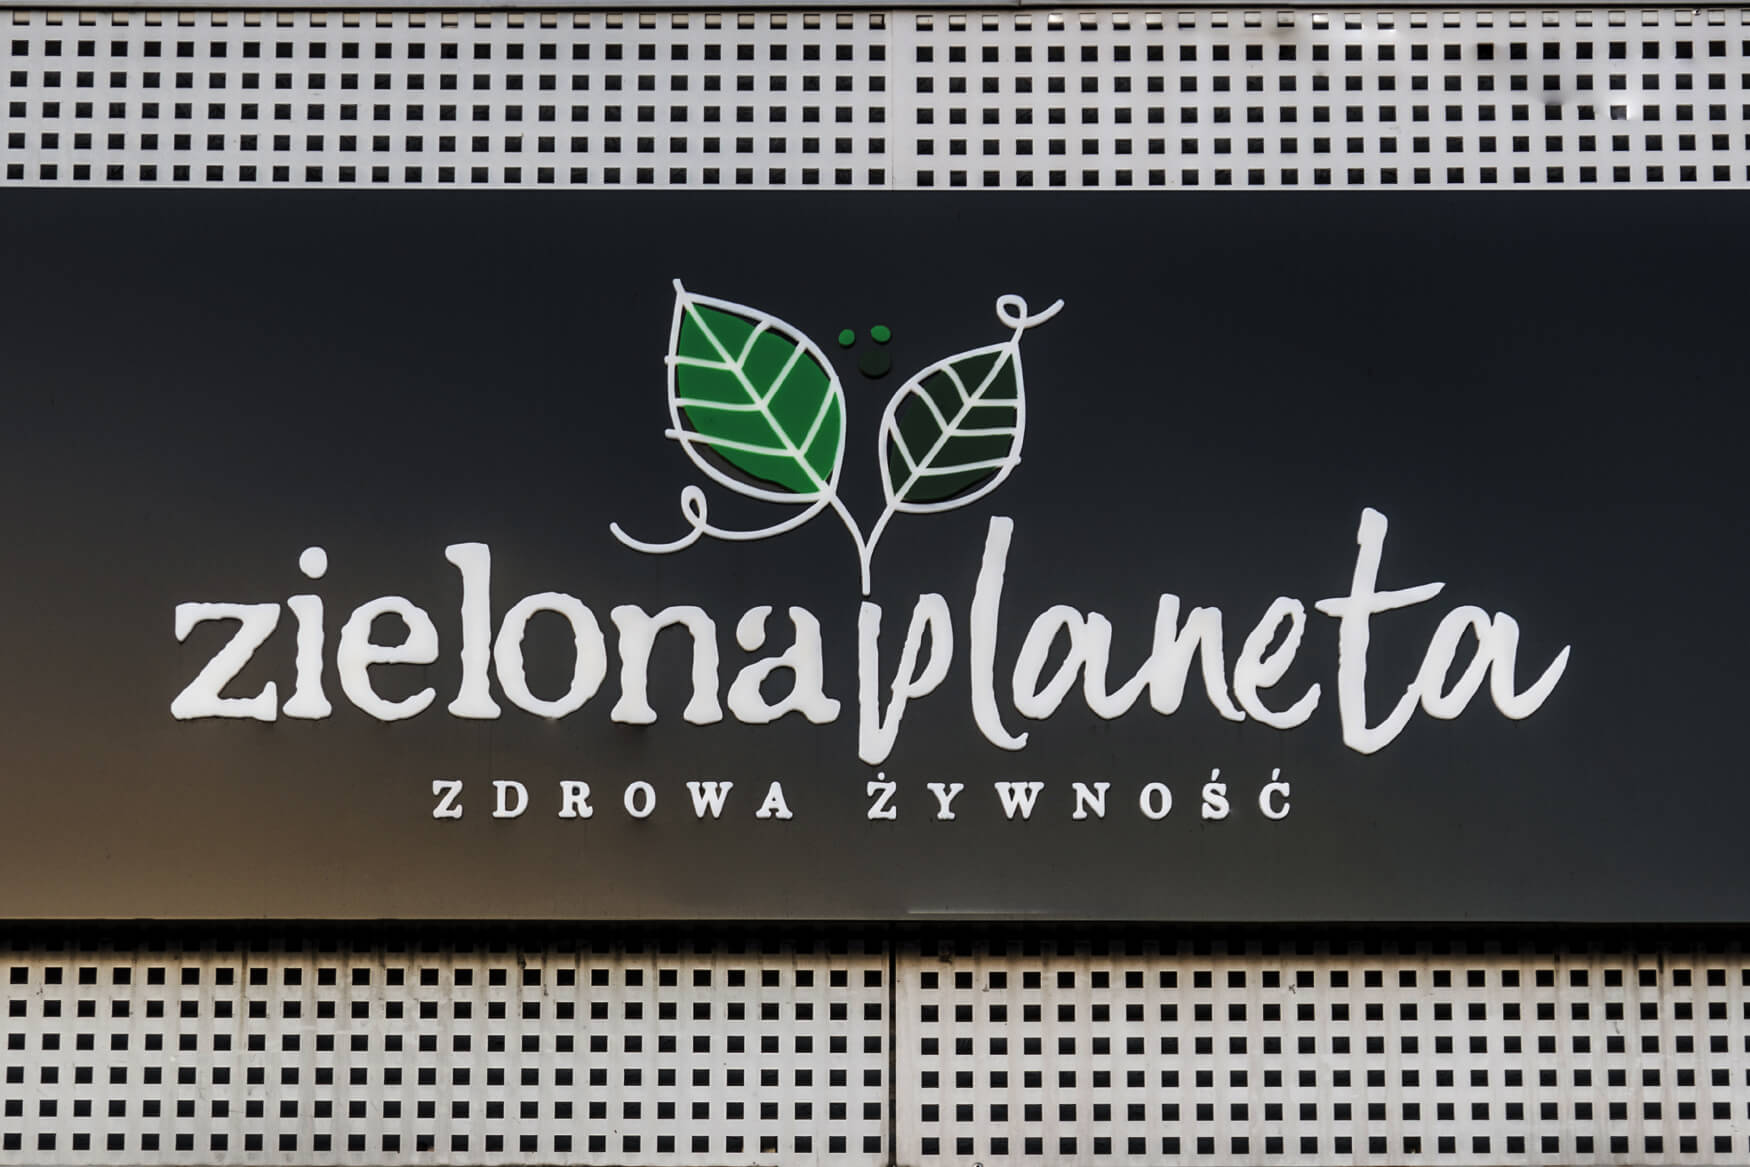 groene planeet - Green Planet - lichtgevende reclame lichtbak met letters en ruimtelijk logo